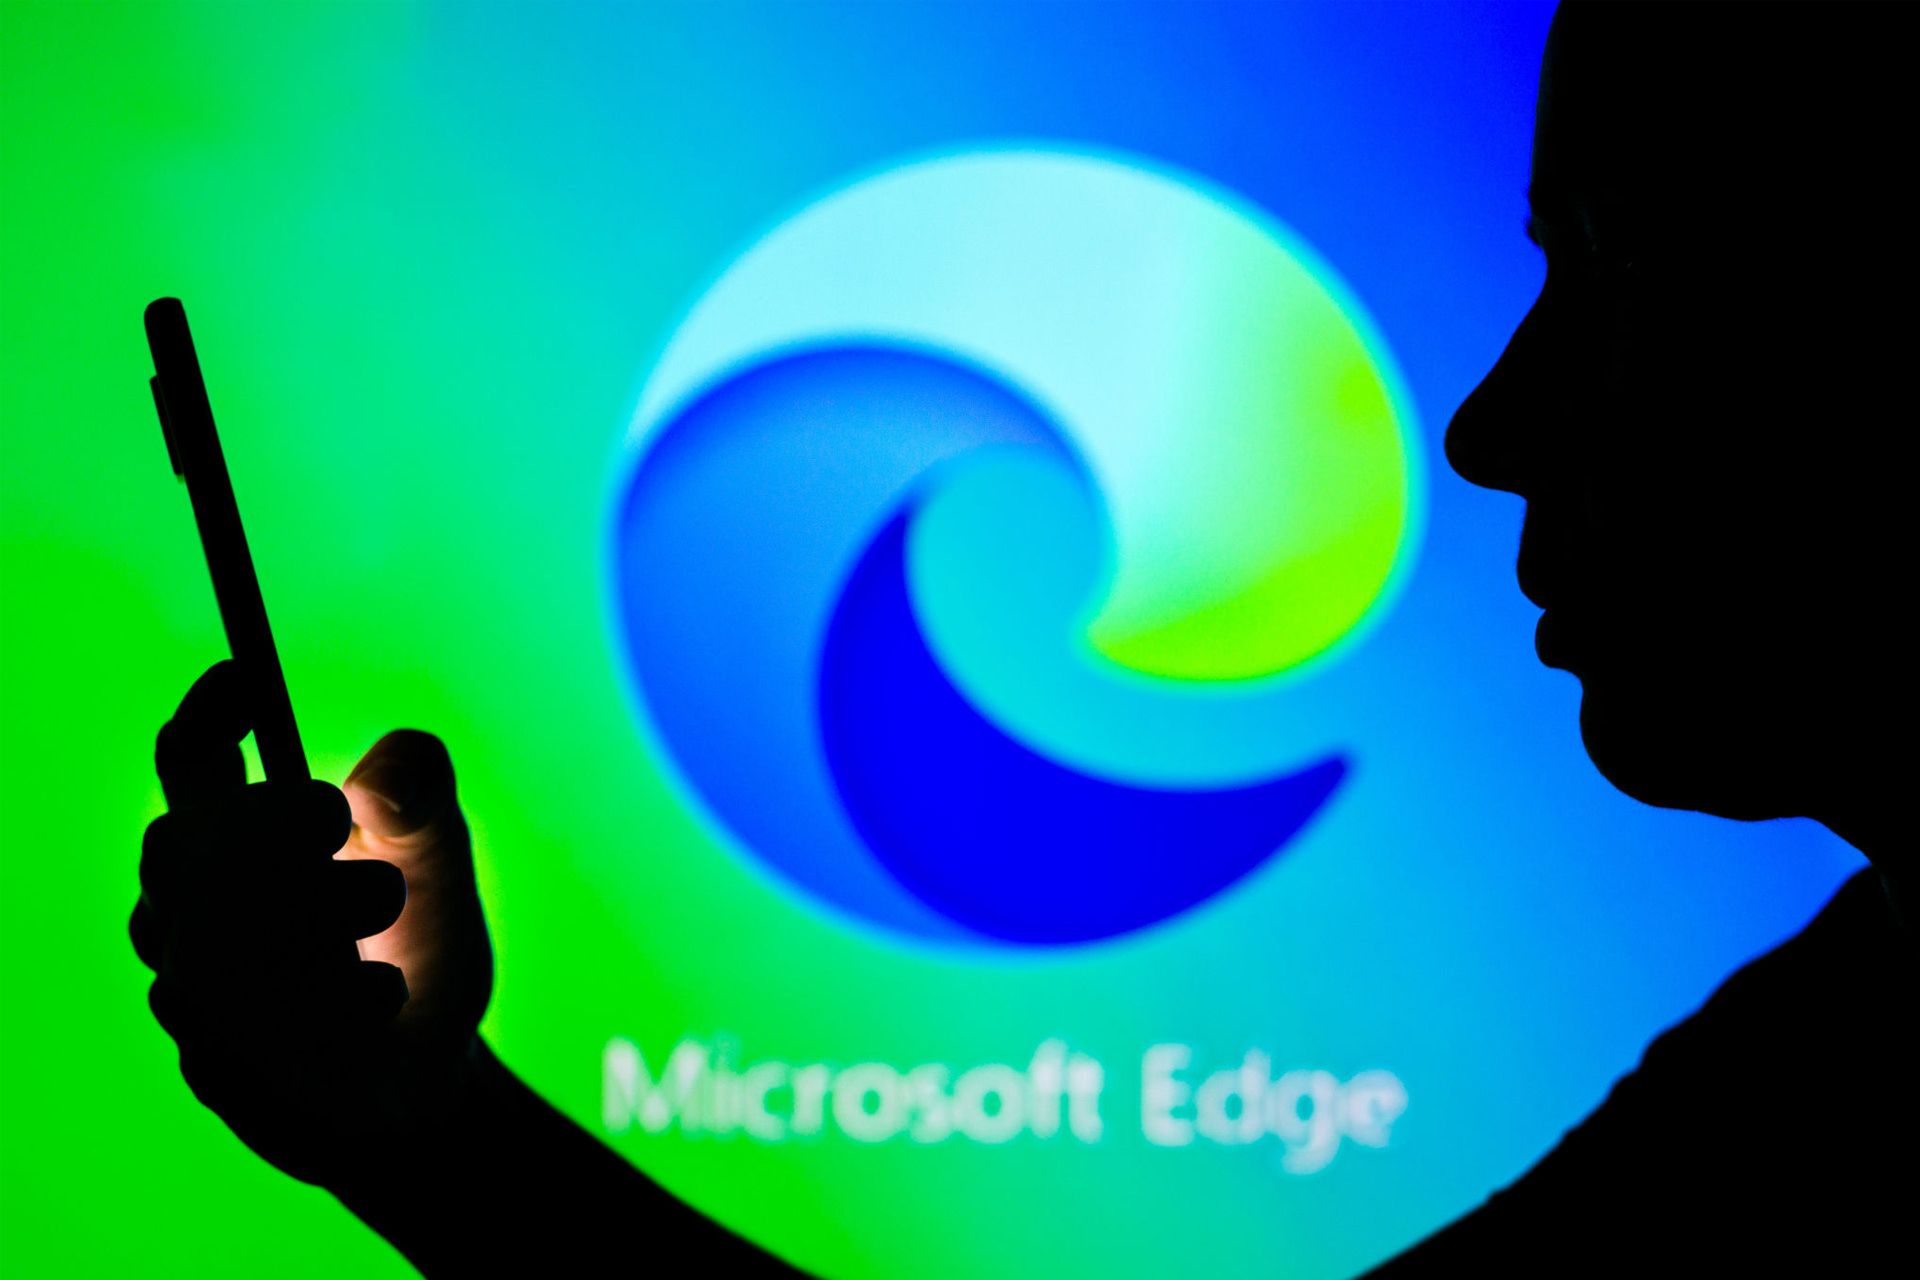 یک مرد در حال استفاده از گوشی لوگو مایکروسافت اج / Microsoft Edge در پس زمینه